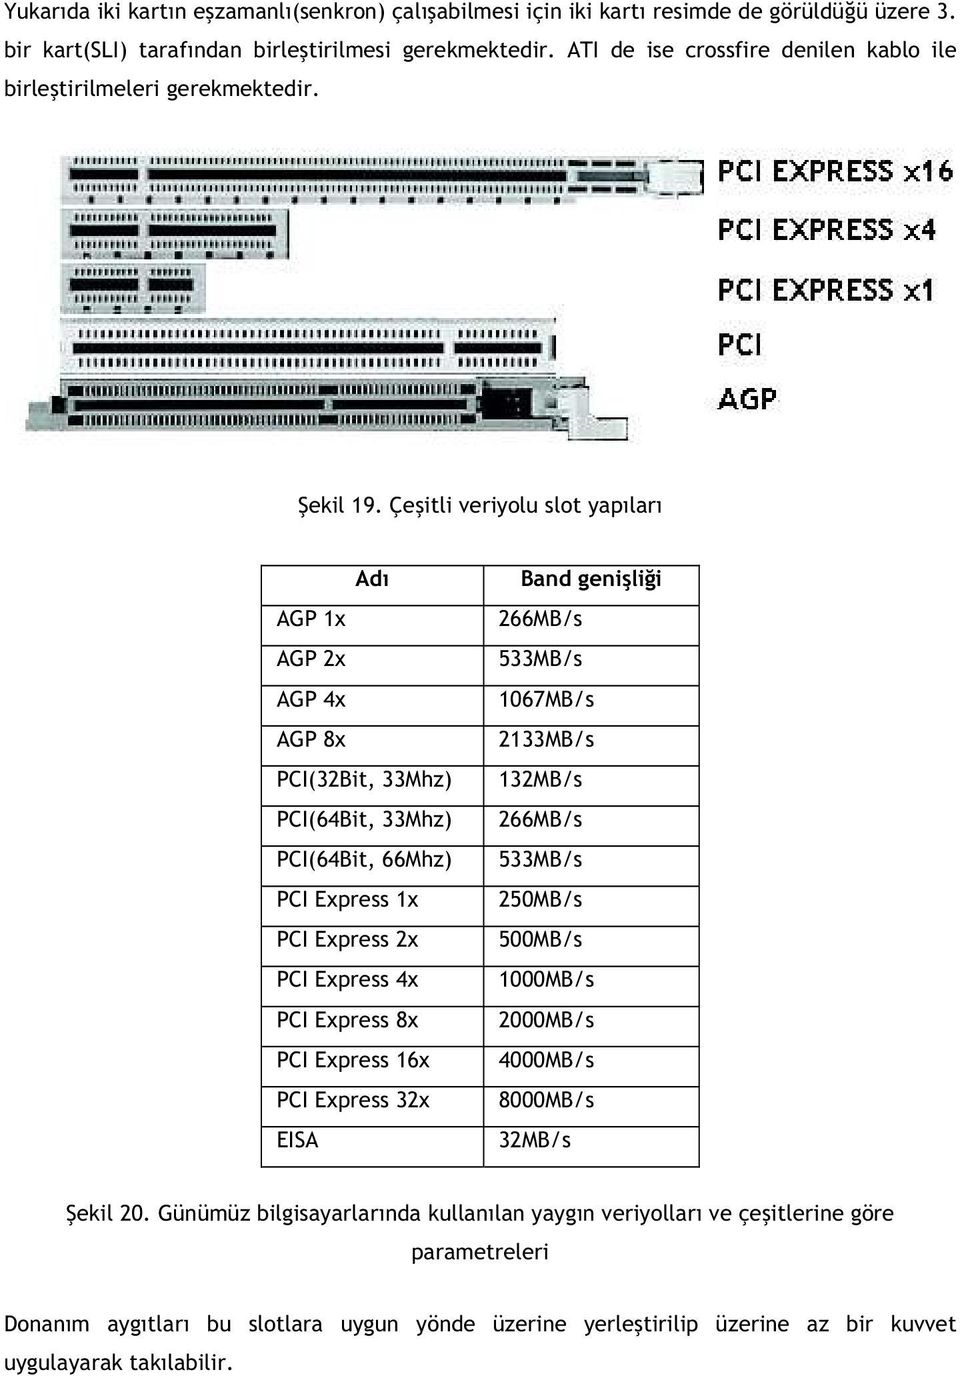 Çe itli veriyolu slot yap lar Ad AGP 1x AGP 2x AGP 4x AGP 8x PCI(32Bit, 33Mhz) PCI(64Bit, 33Mhz) PCI(64Bit, 66Mhz) PCI Express 1x PCI Express 2x PCI Express 4x PCI Express 8x PCI Express 16x PCI